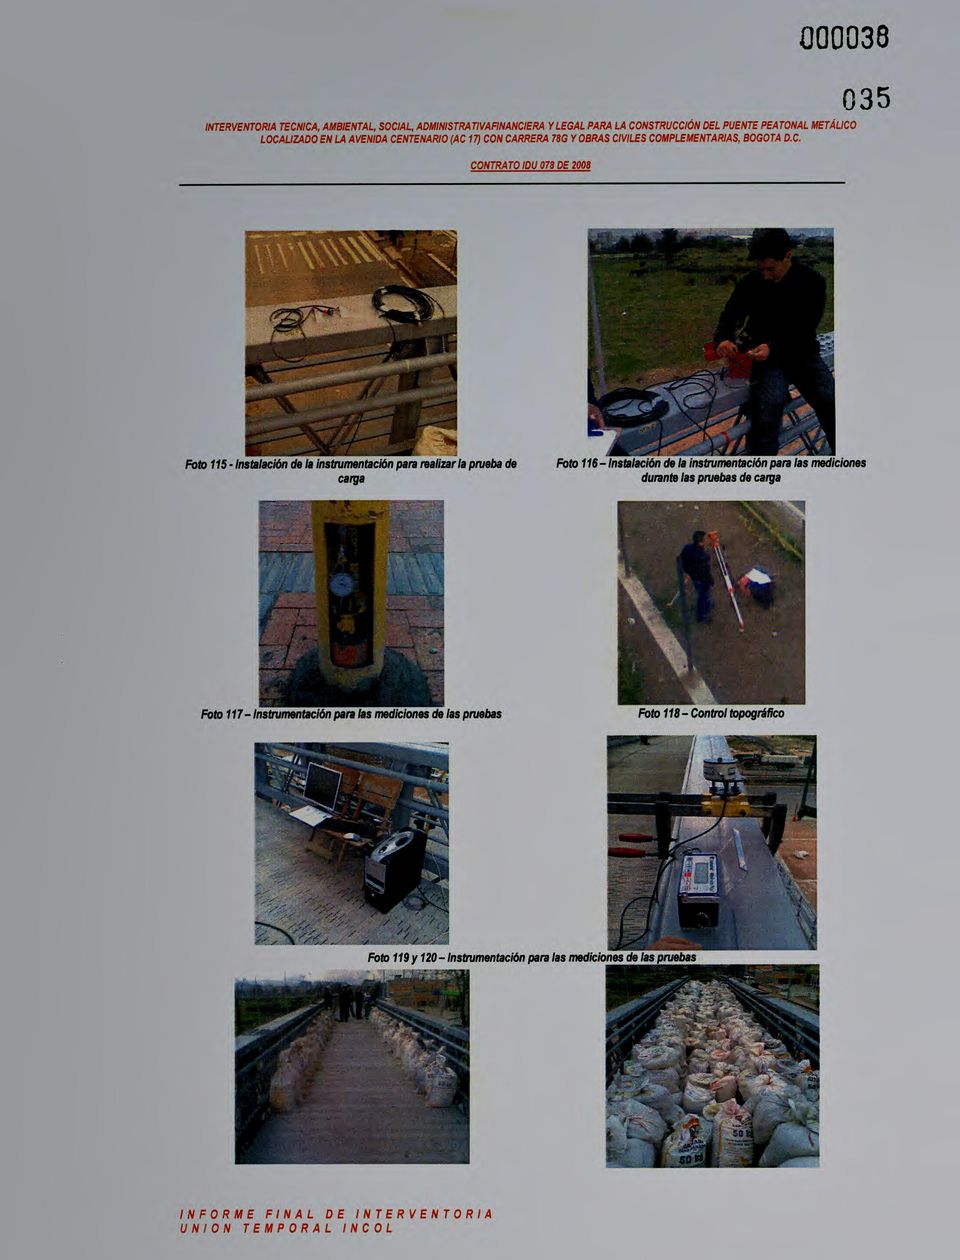 C. CONTRATO IDU 078 DE 2008 035 Foto 115 -Instalación de la instrumentación para realizar la prueba de carga Foto